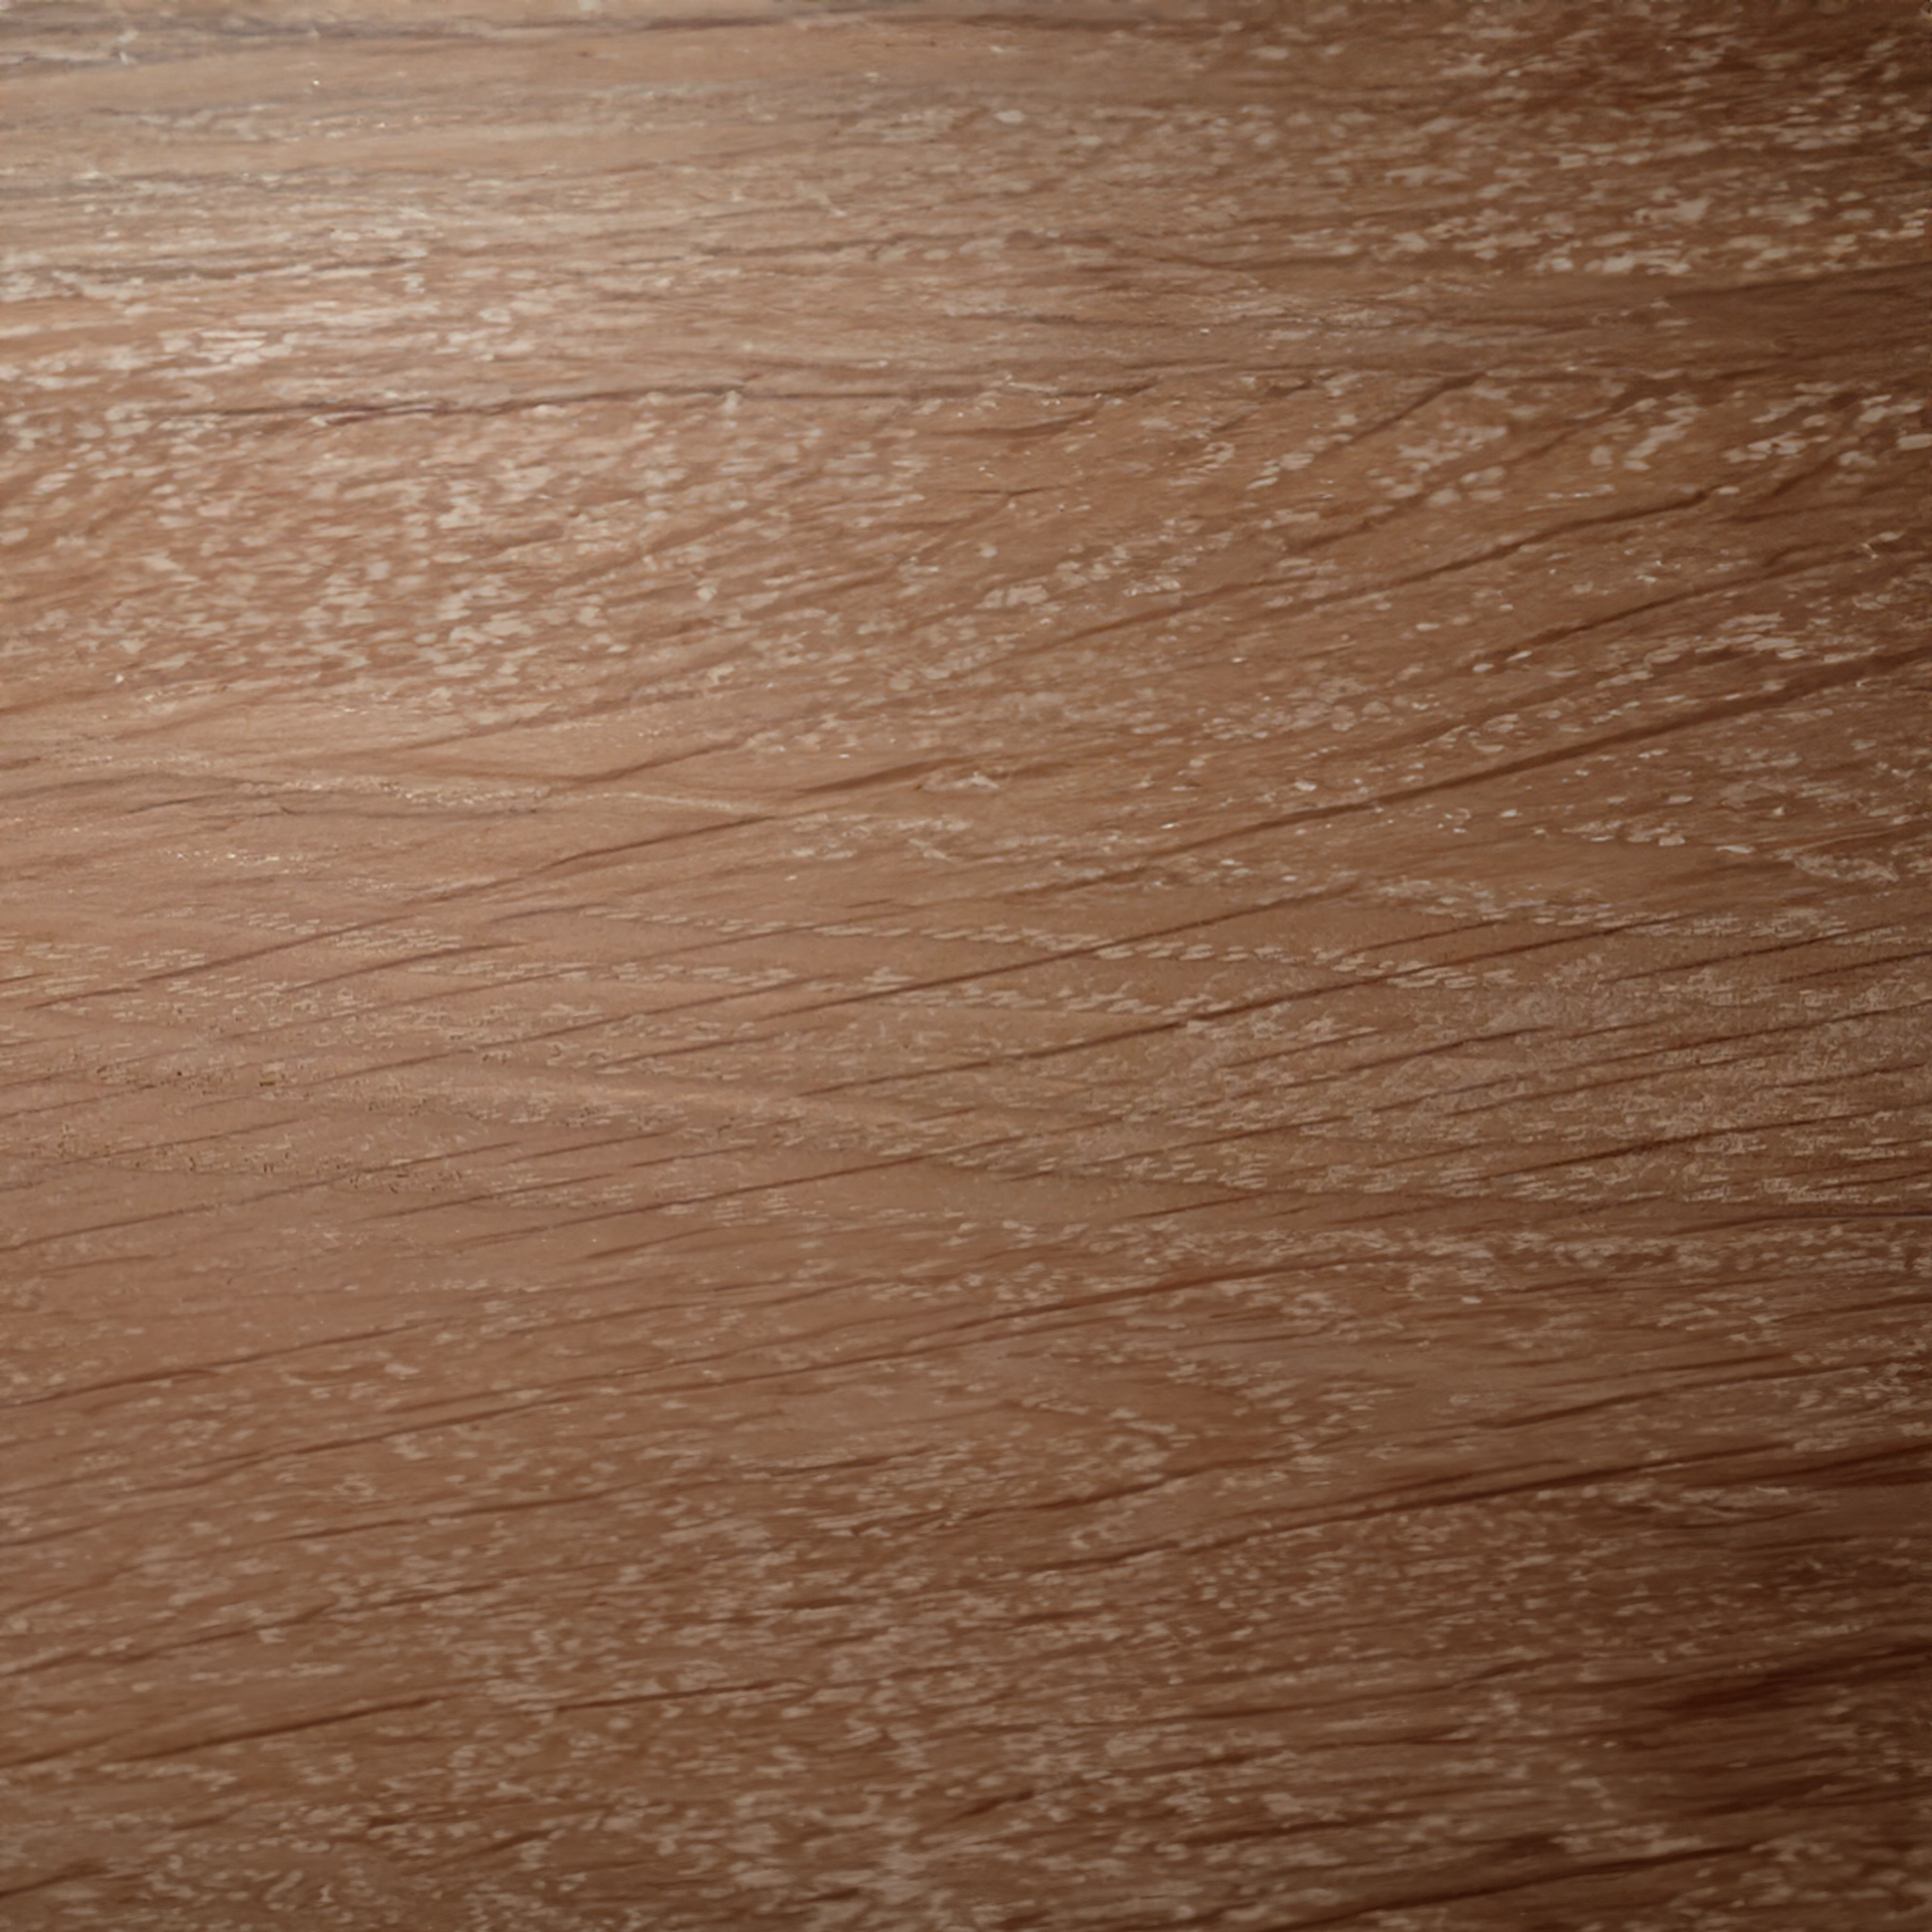 Eiche nachhaltige Holzpflege aus 100% natürlichen Inhaltsstoffen. studio moreandless